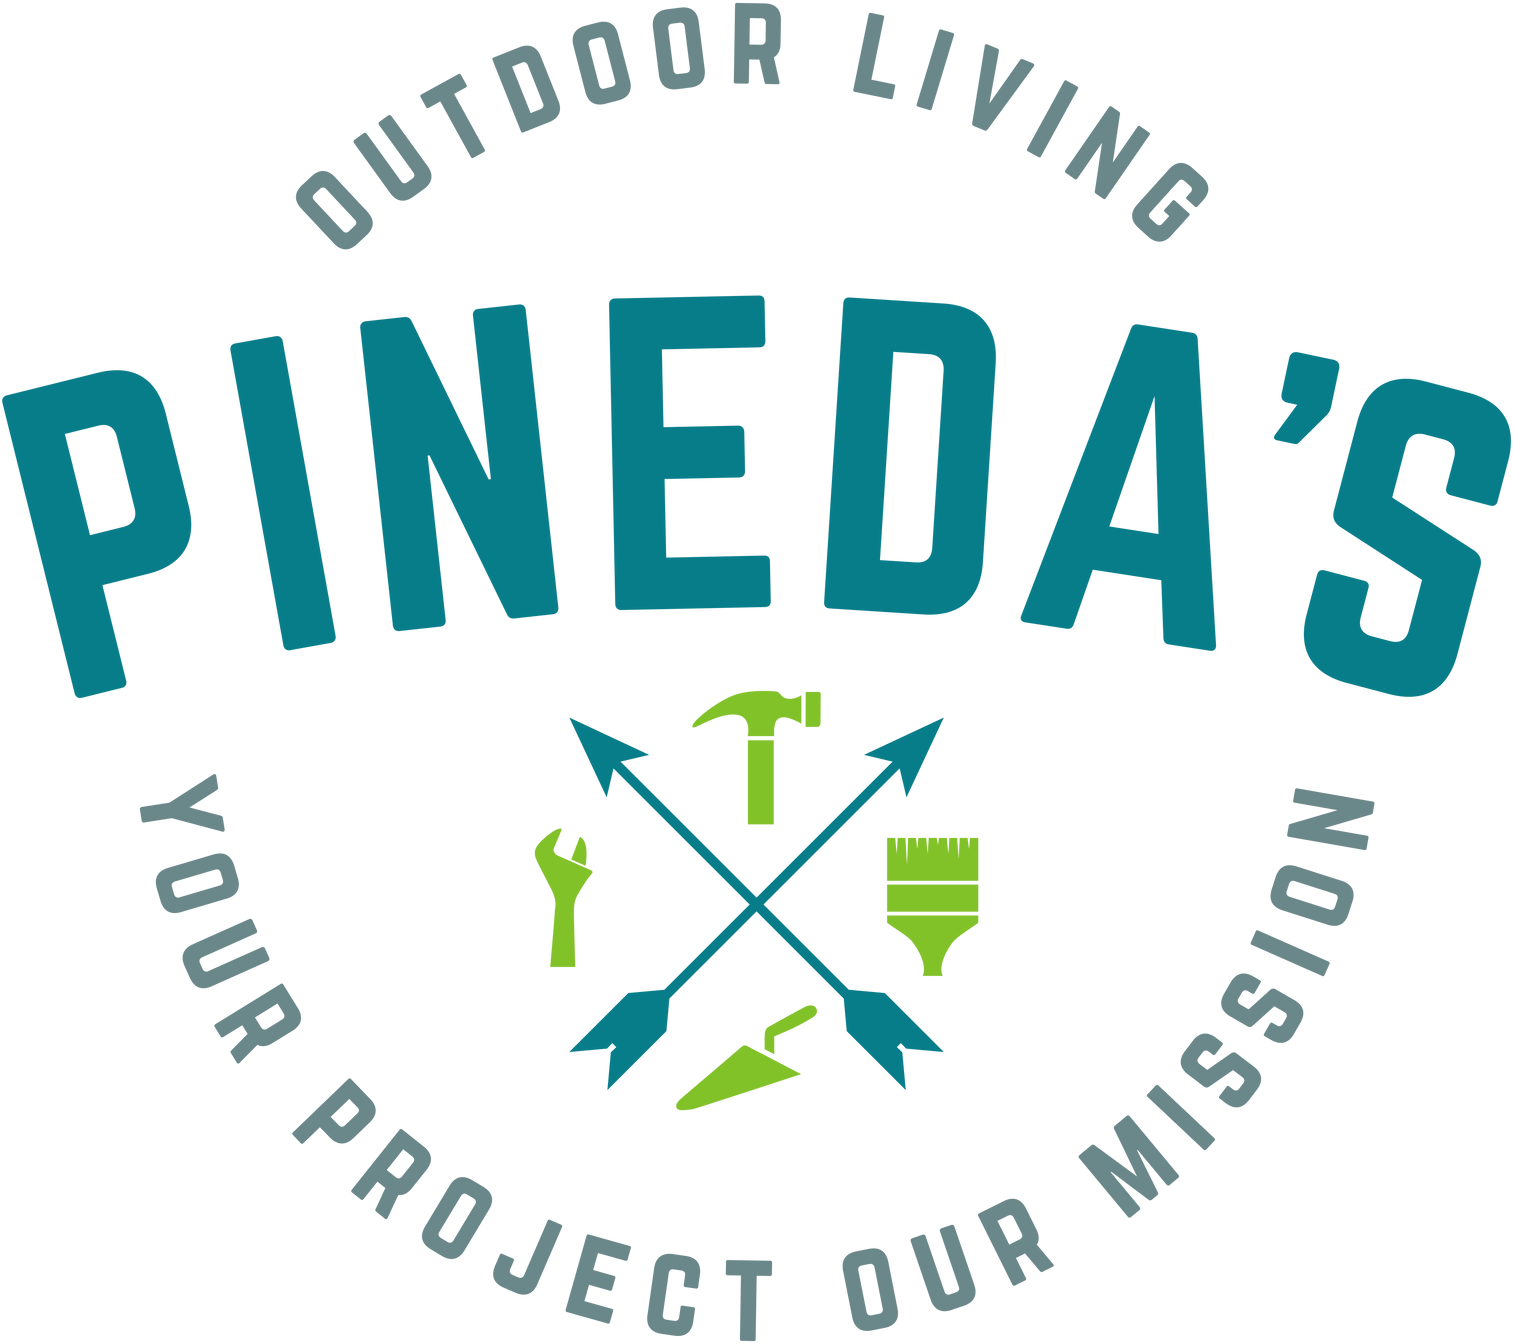 Pinedas Outdoor Living - Logo 